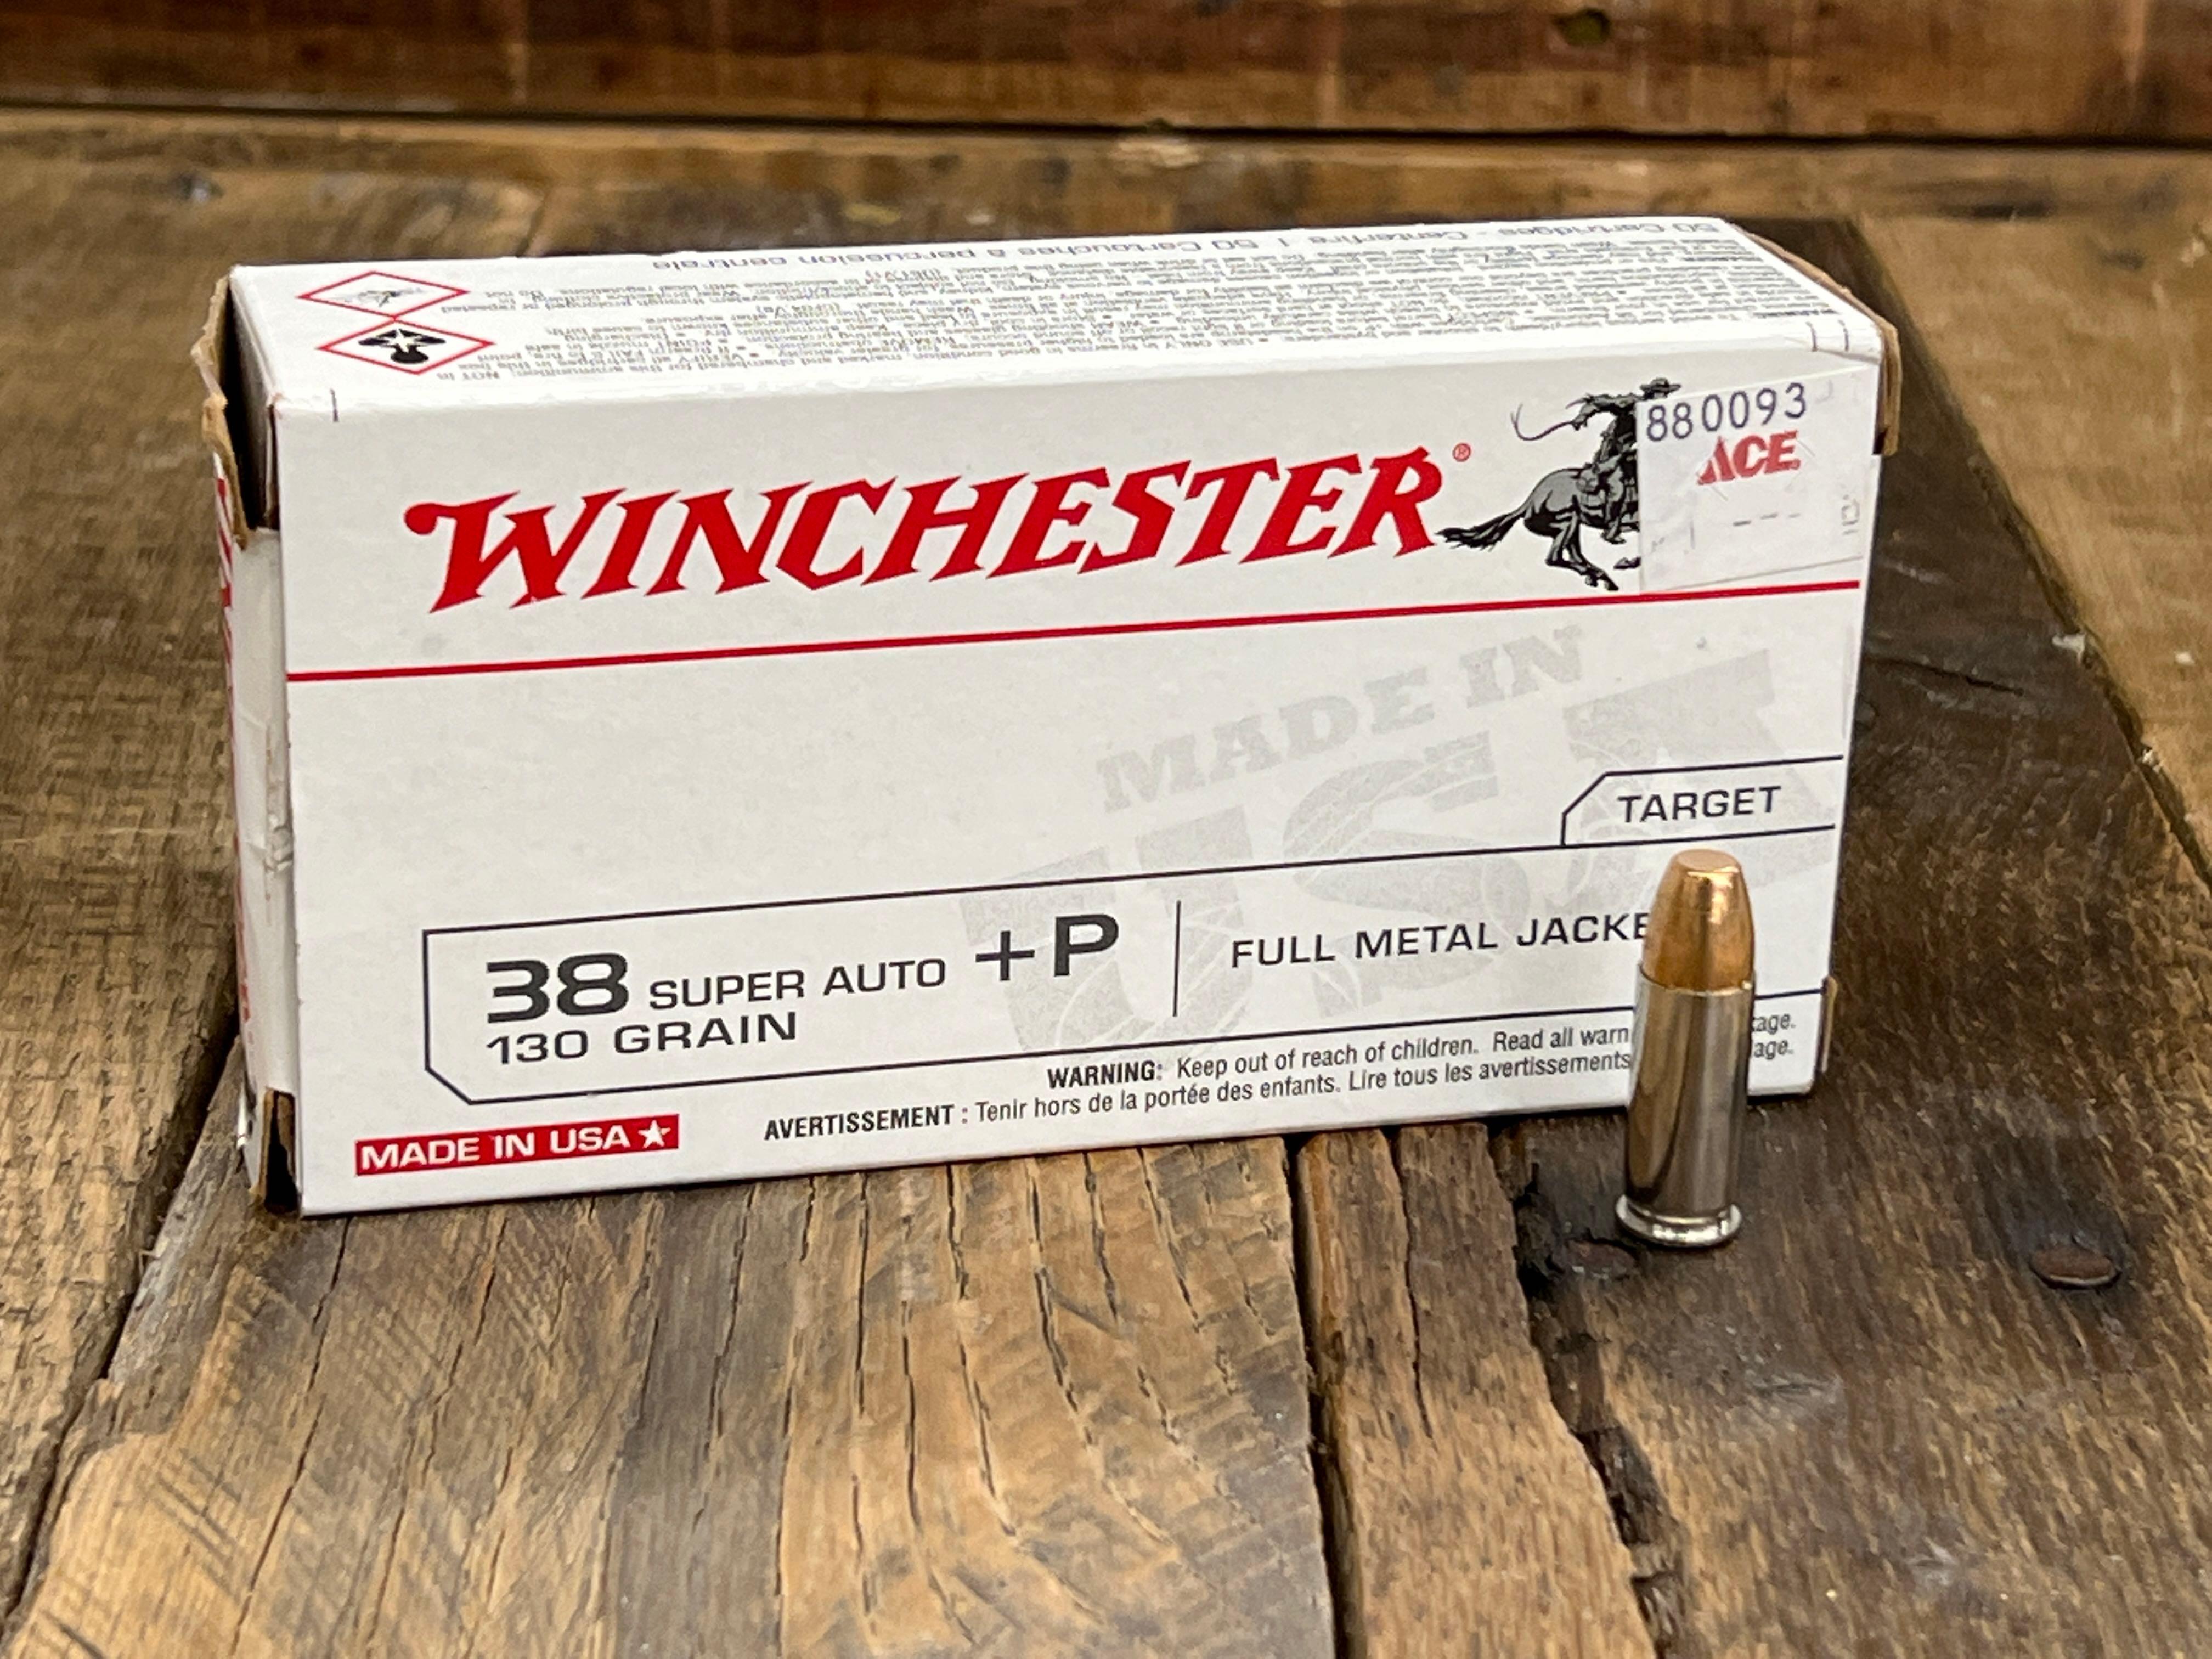 50 ROUND BOX OF WINCHESTER 38 SUPER +P 130GR FMJ AMMO